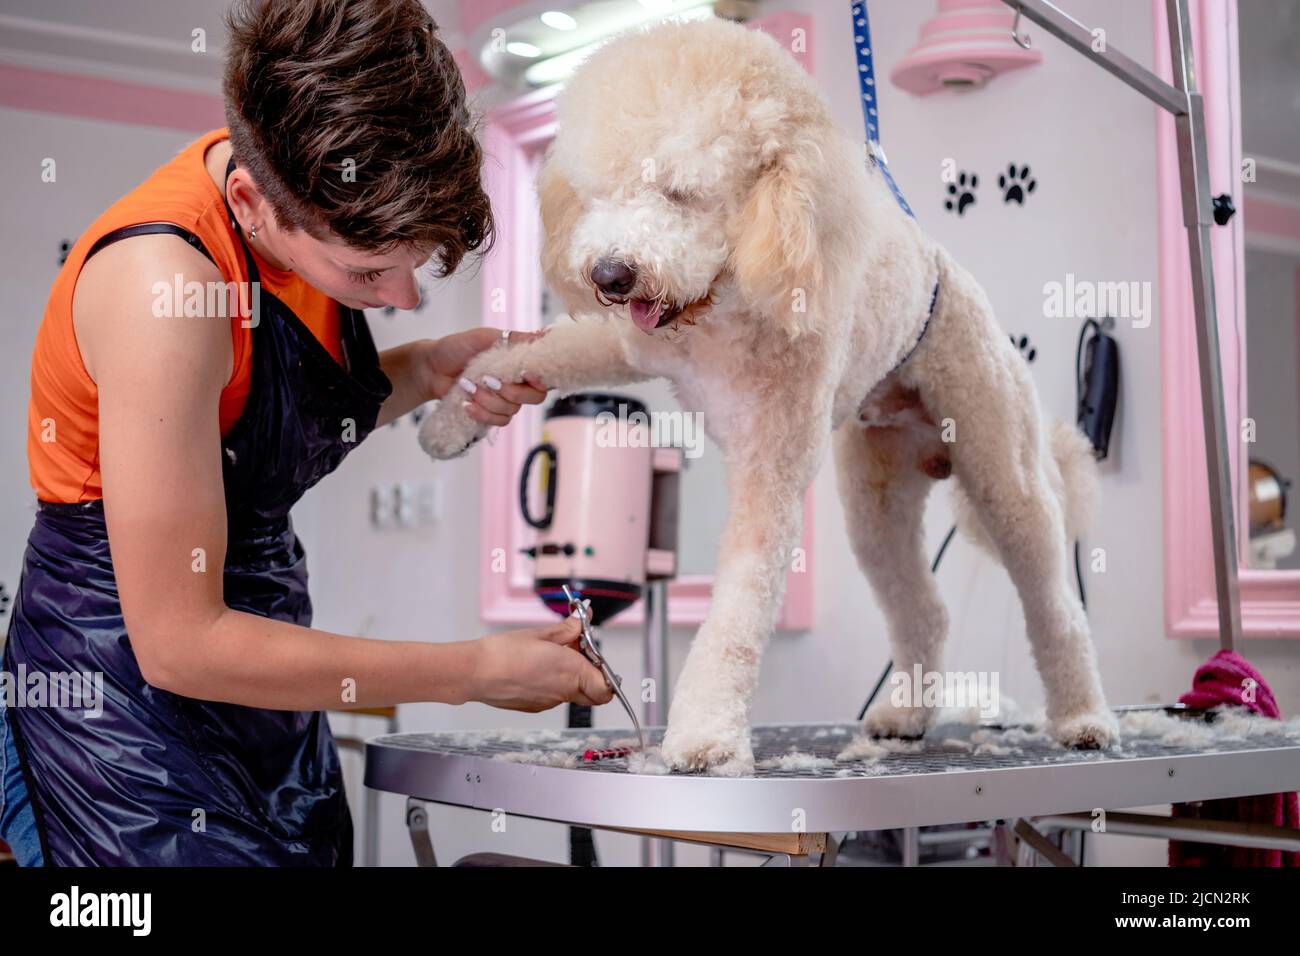 Eine professionelle Hündin gibt einem süßen Pudel auf einem Frisiertisch in  einem Schönheitssalon für Hunde einen Haarschnitt Stockfotografie - Alamy